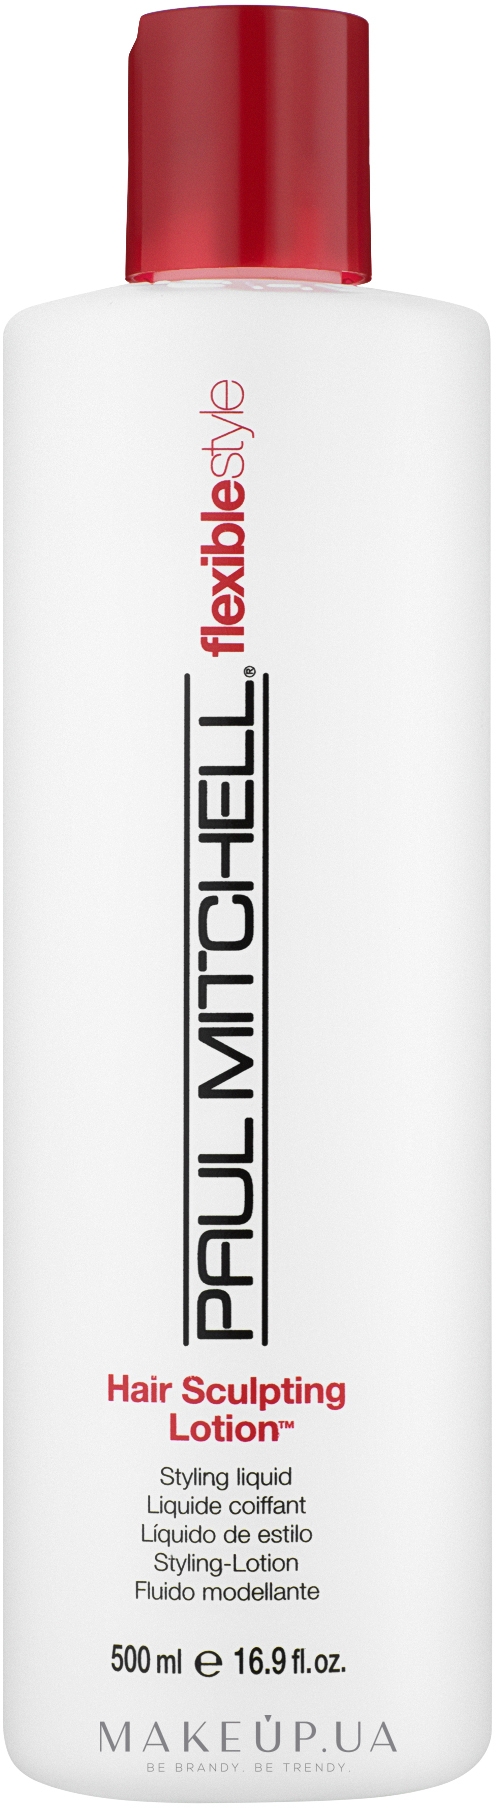 Універсальний лосьйон для укладання - Paul Mitchell Flexible Hair Style Sculpting Lotion — фото 500ml